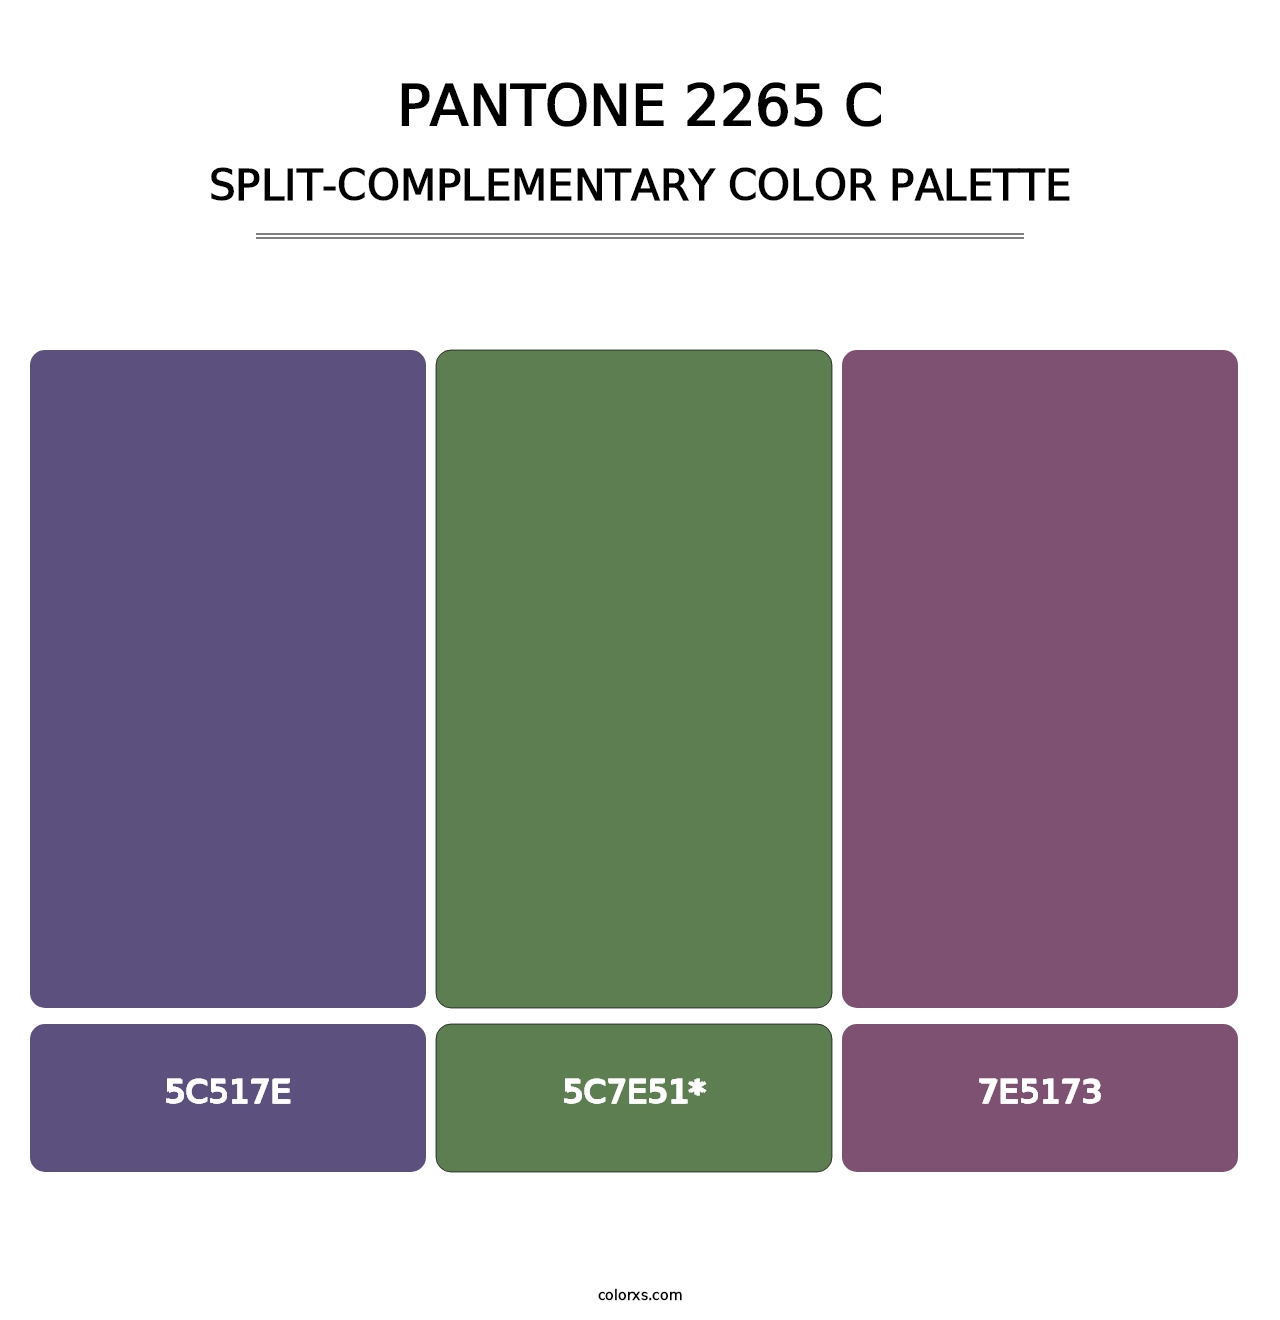 PANTONE 2265 C - Split-Complementary Color Palette